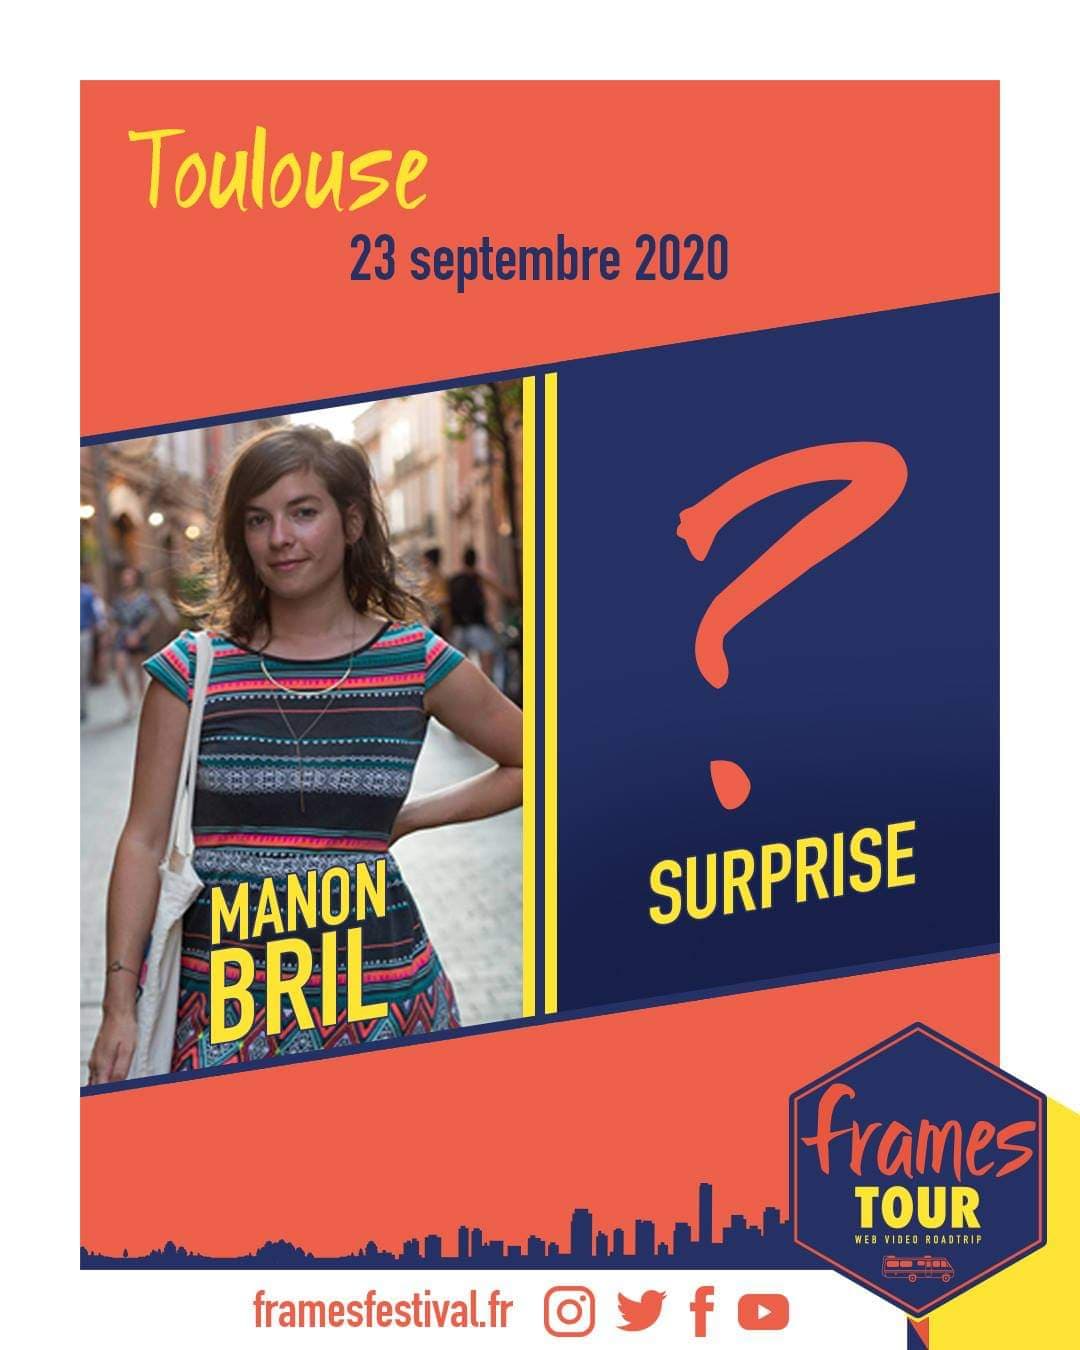 Frames 2020, programmation Paris avec les chaînes Youtube Manon Bril et invité surprise